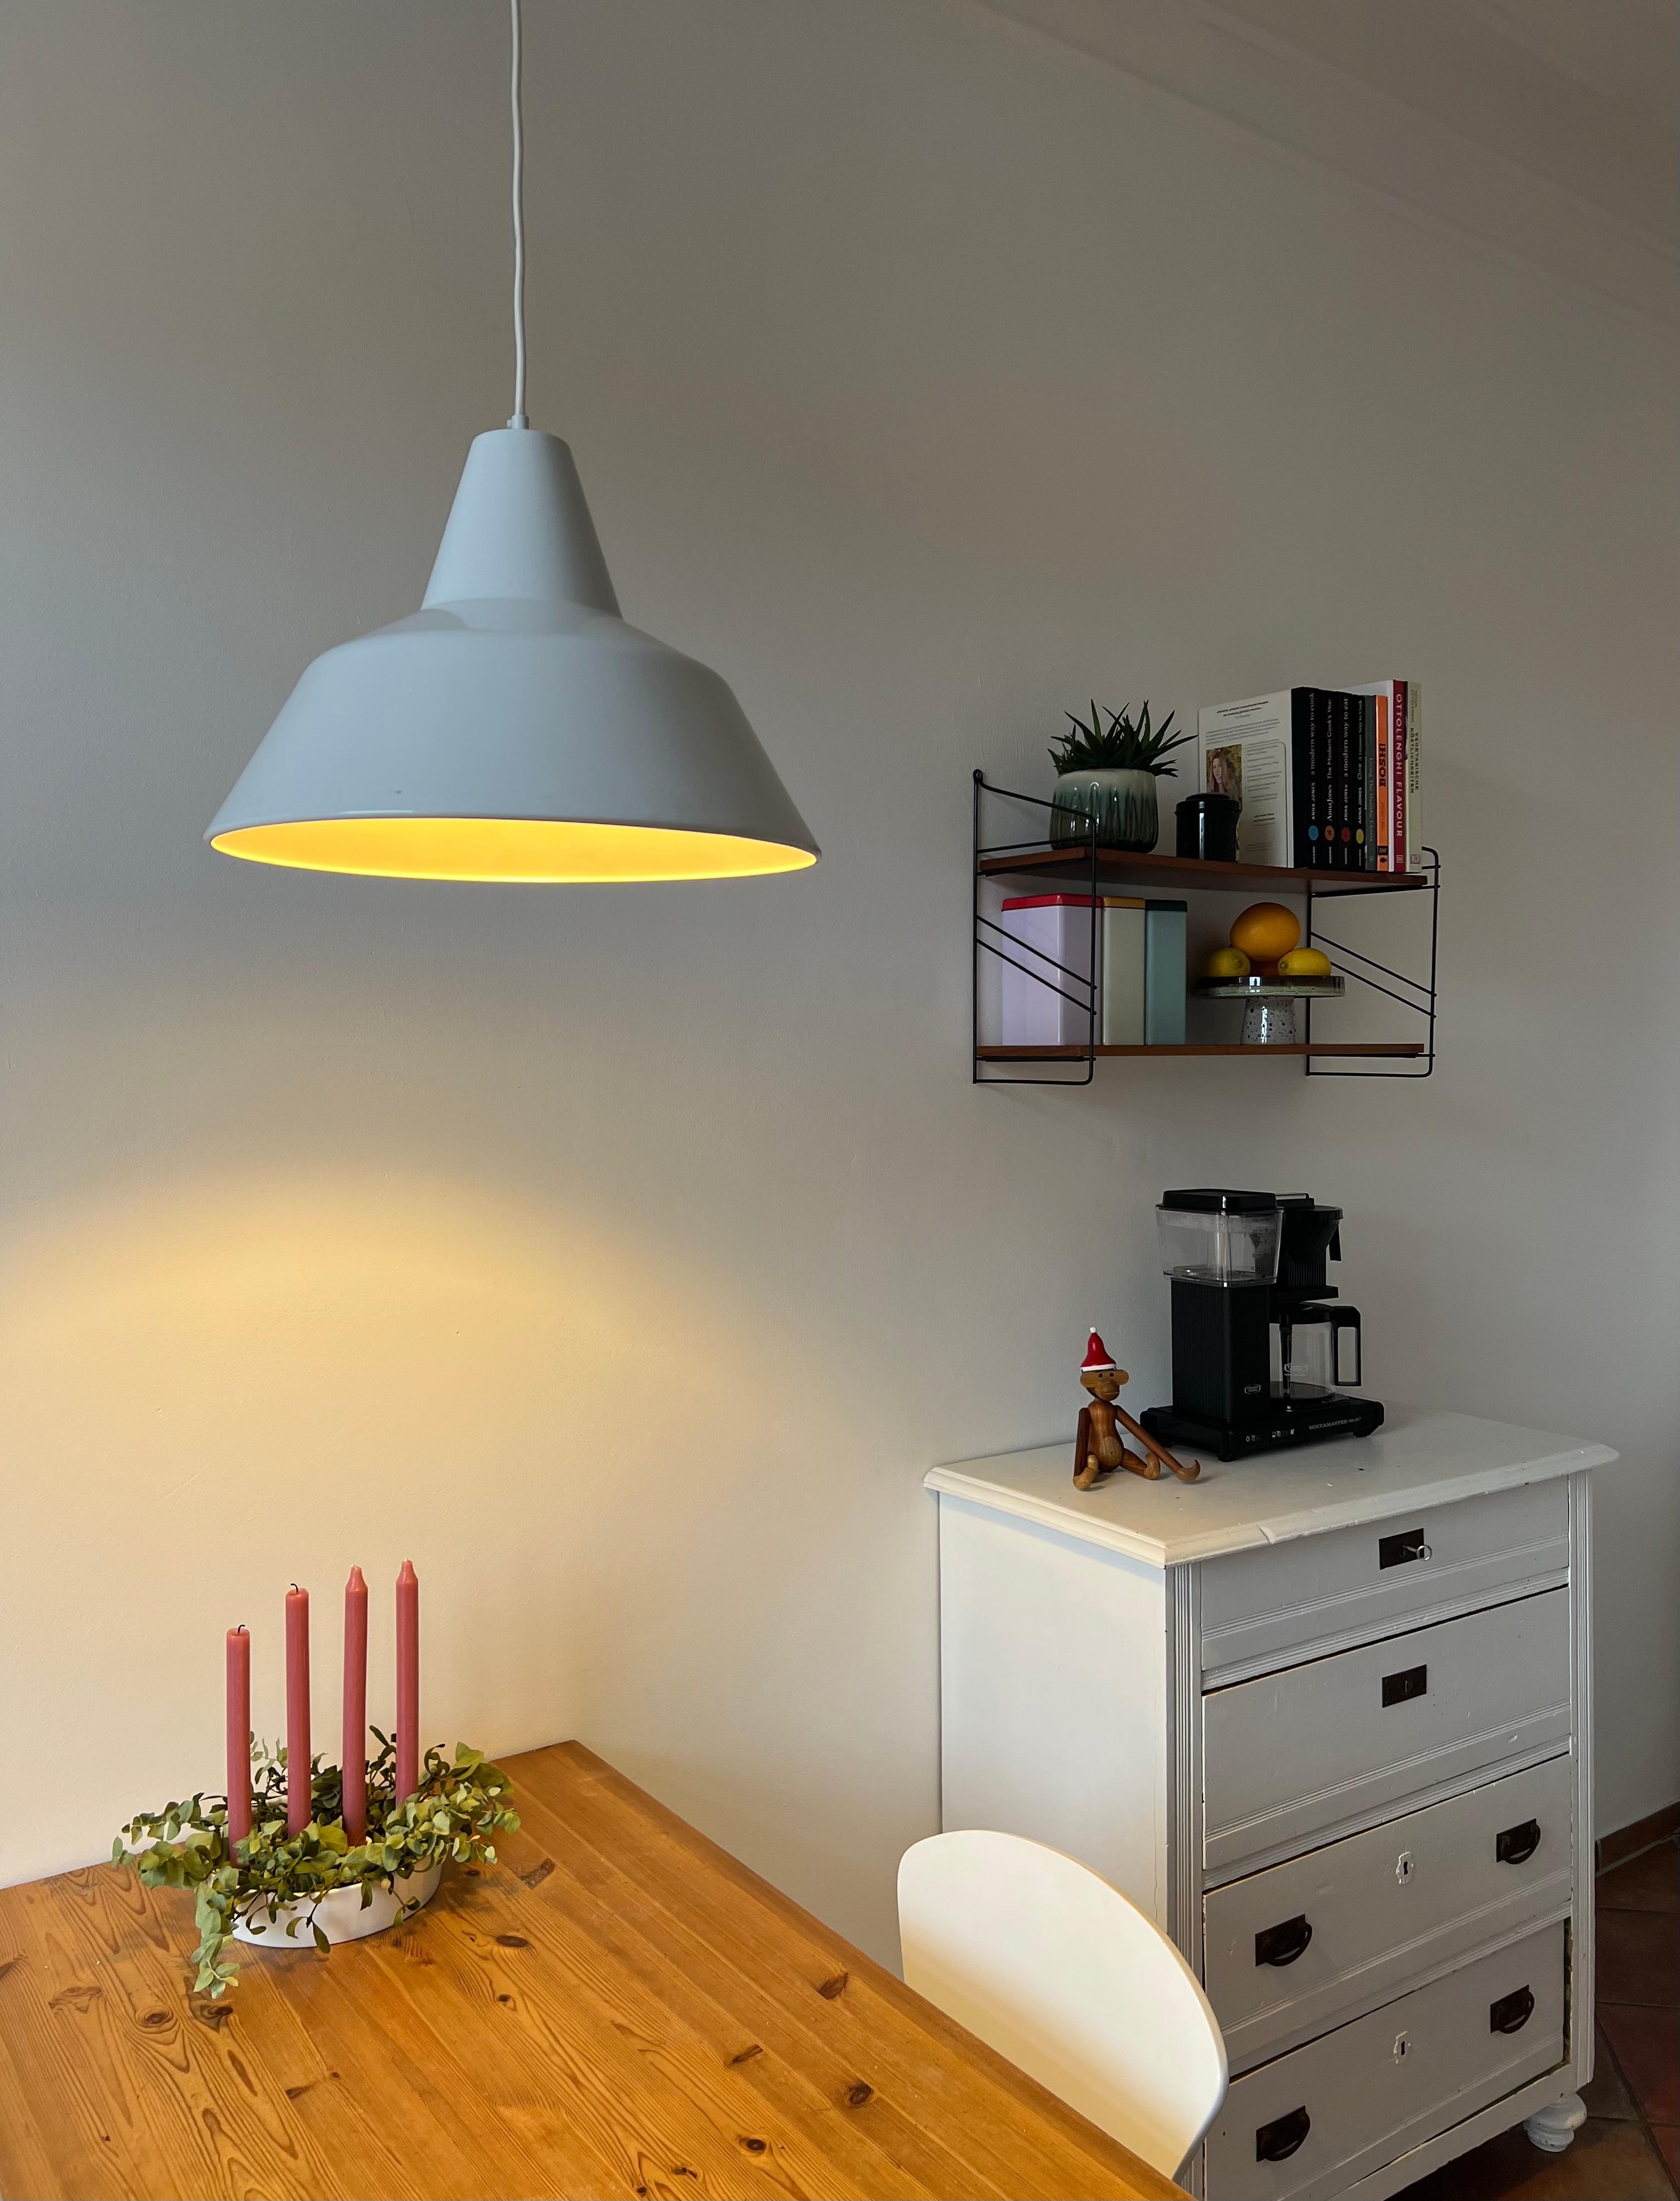 Neue Küchenlampe 
#küche #emaillelampe #altbau #kitchen #altbau #altbauliebe #küchenideen #küchentisch 